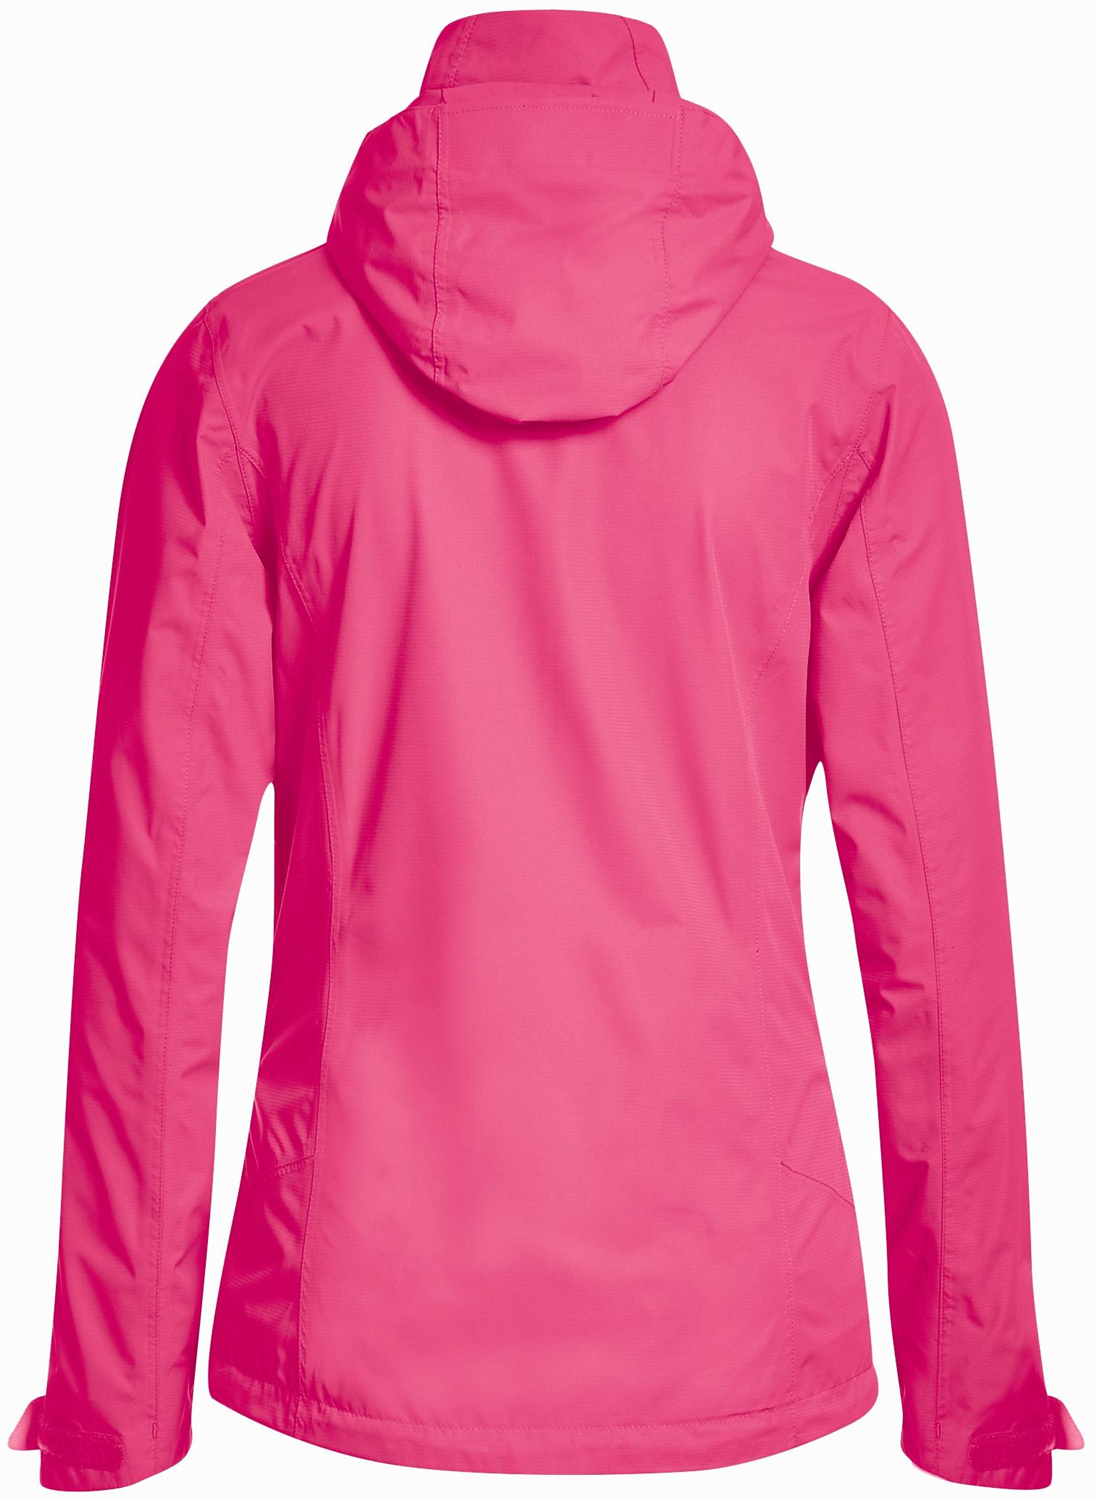 Куртка для активного отдыха Maier Sports 2019 Metor pink/red plum